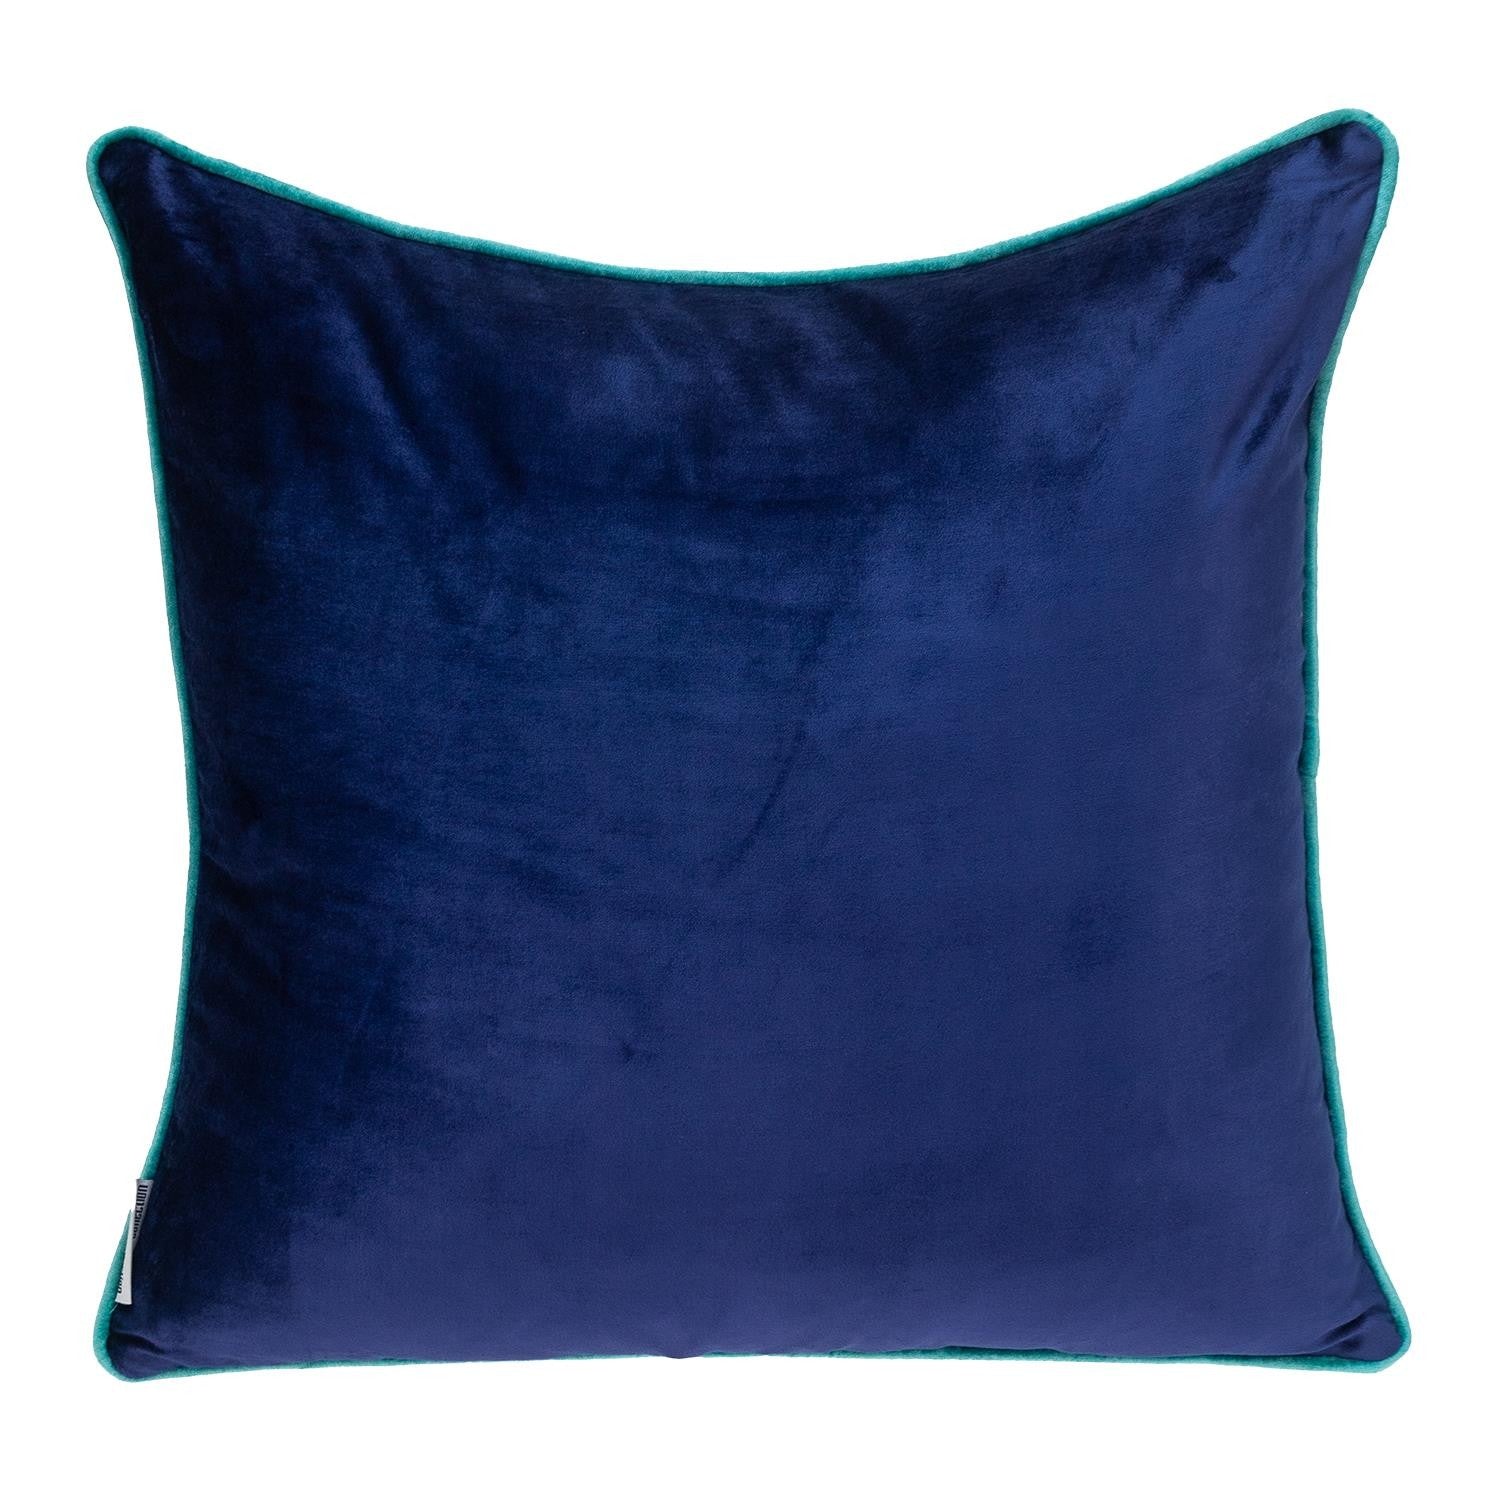 Blue Navy and Gray Reversible Velvet Throw Pillow